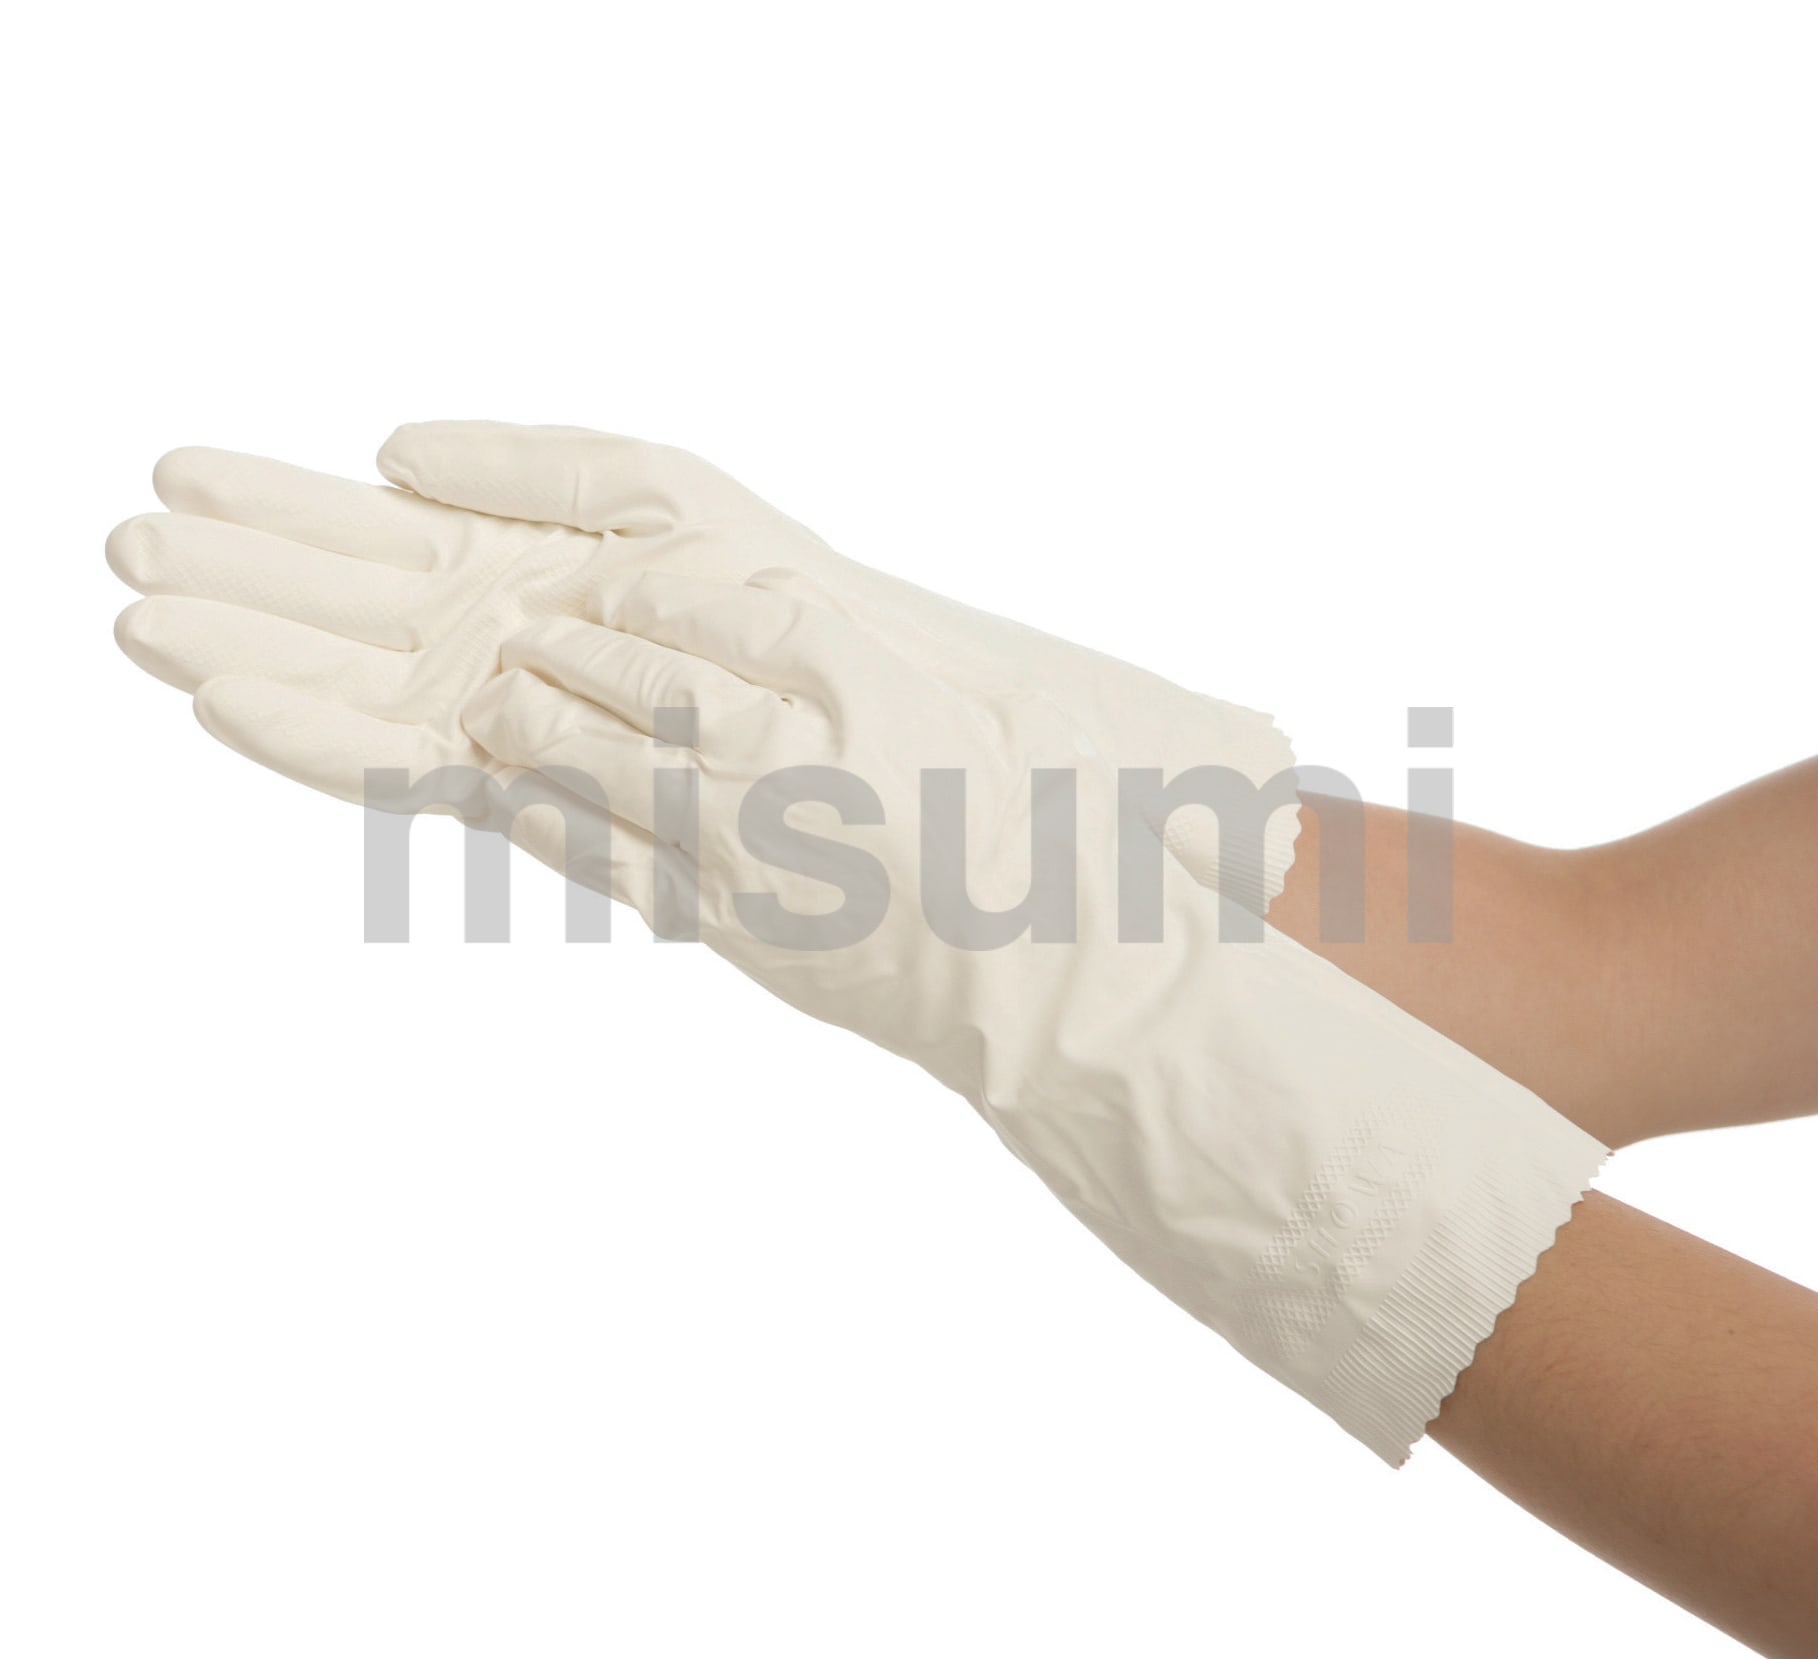 ニトリルゴム手袋 簡易包装ニトローブ薄手 10双入 No.135 ショーワグローブ MISUMI(ミスミ)